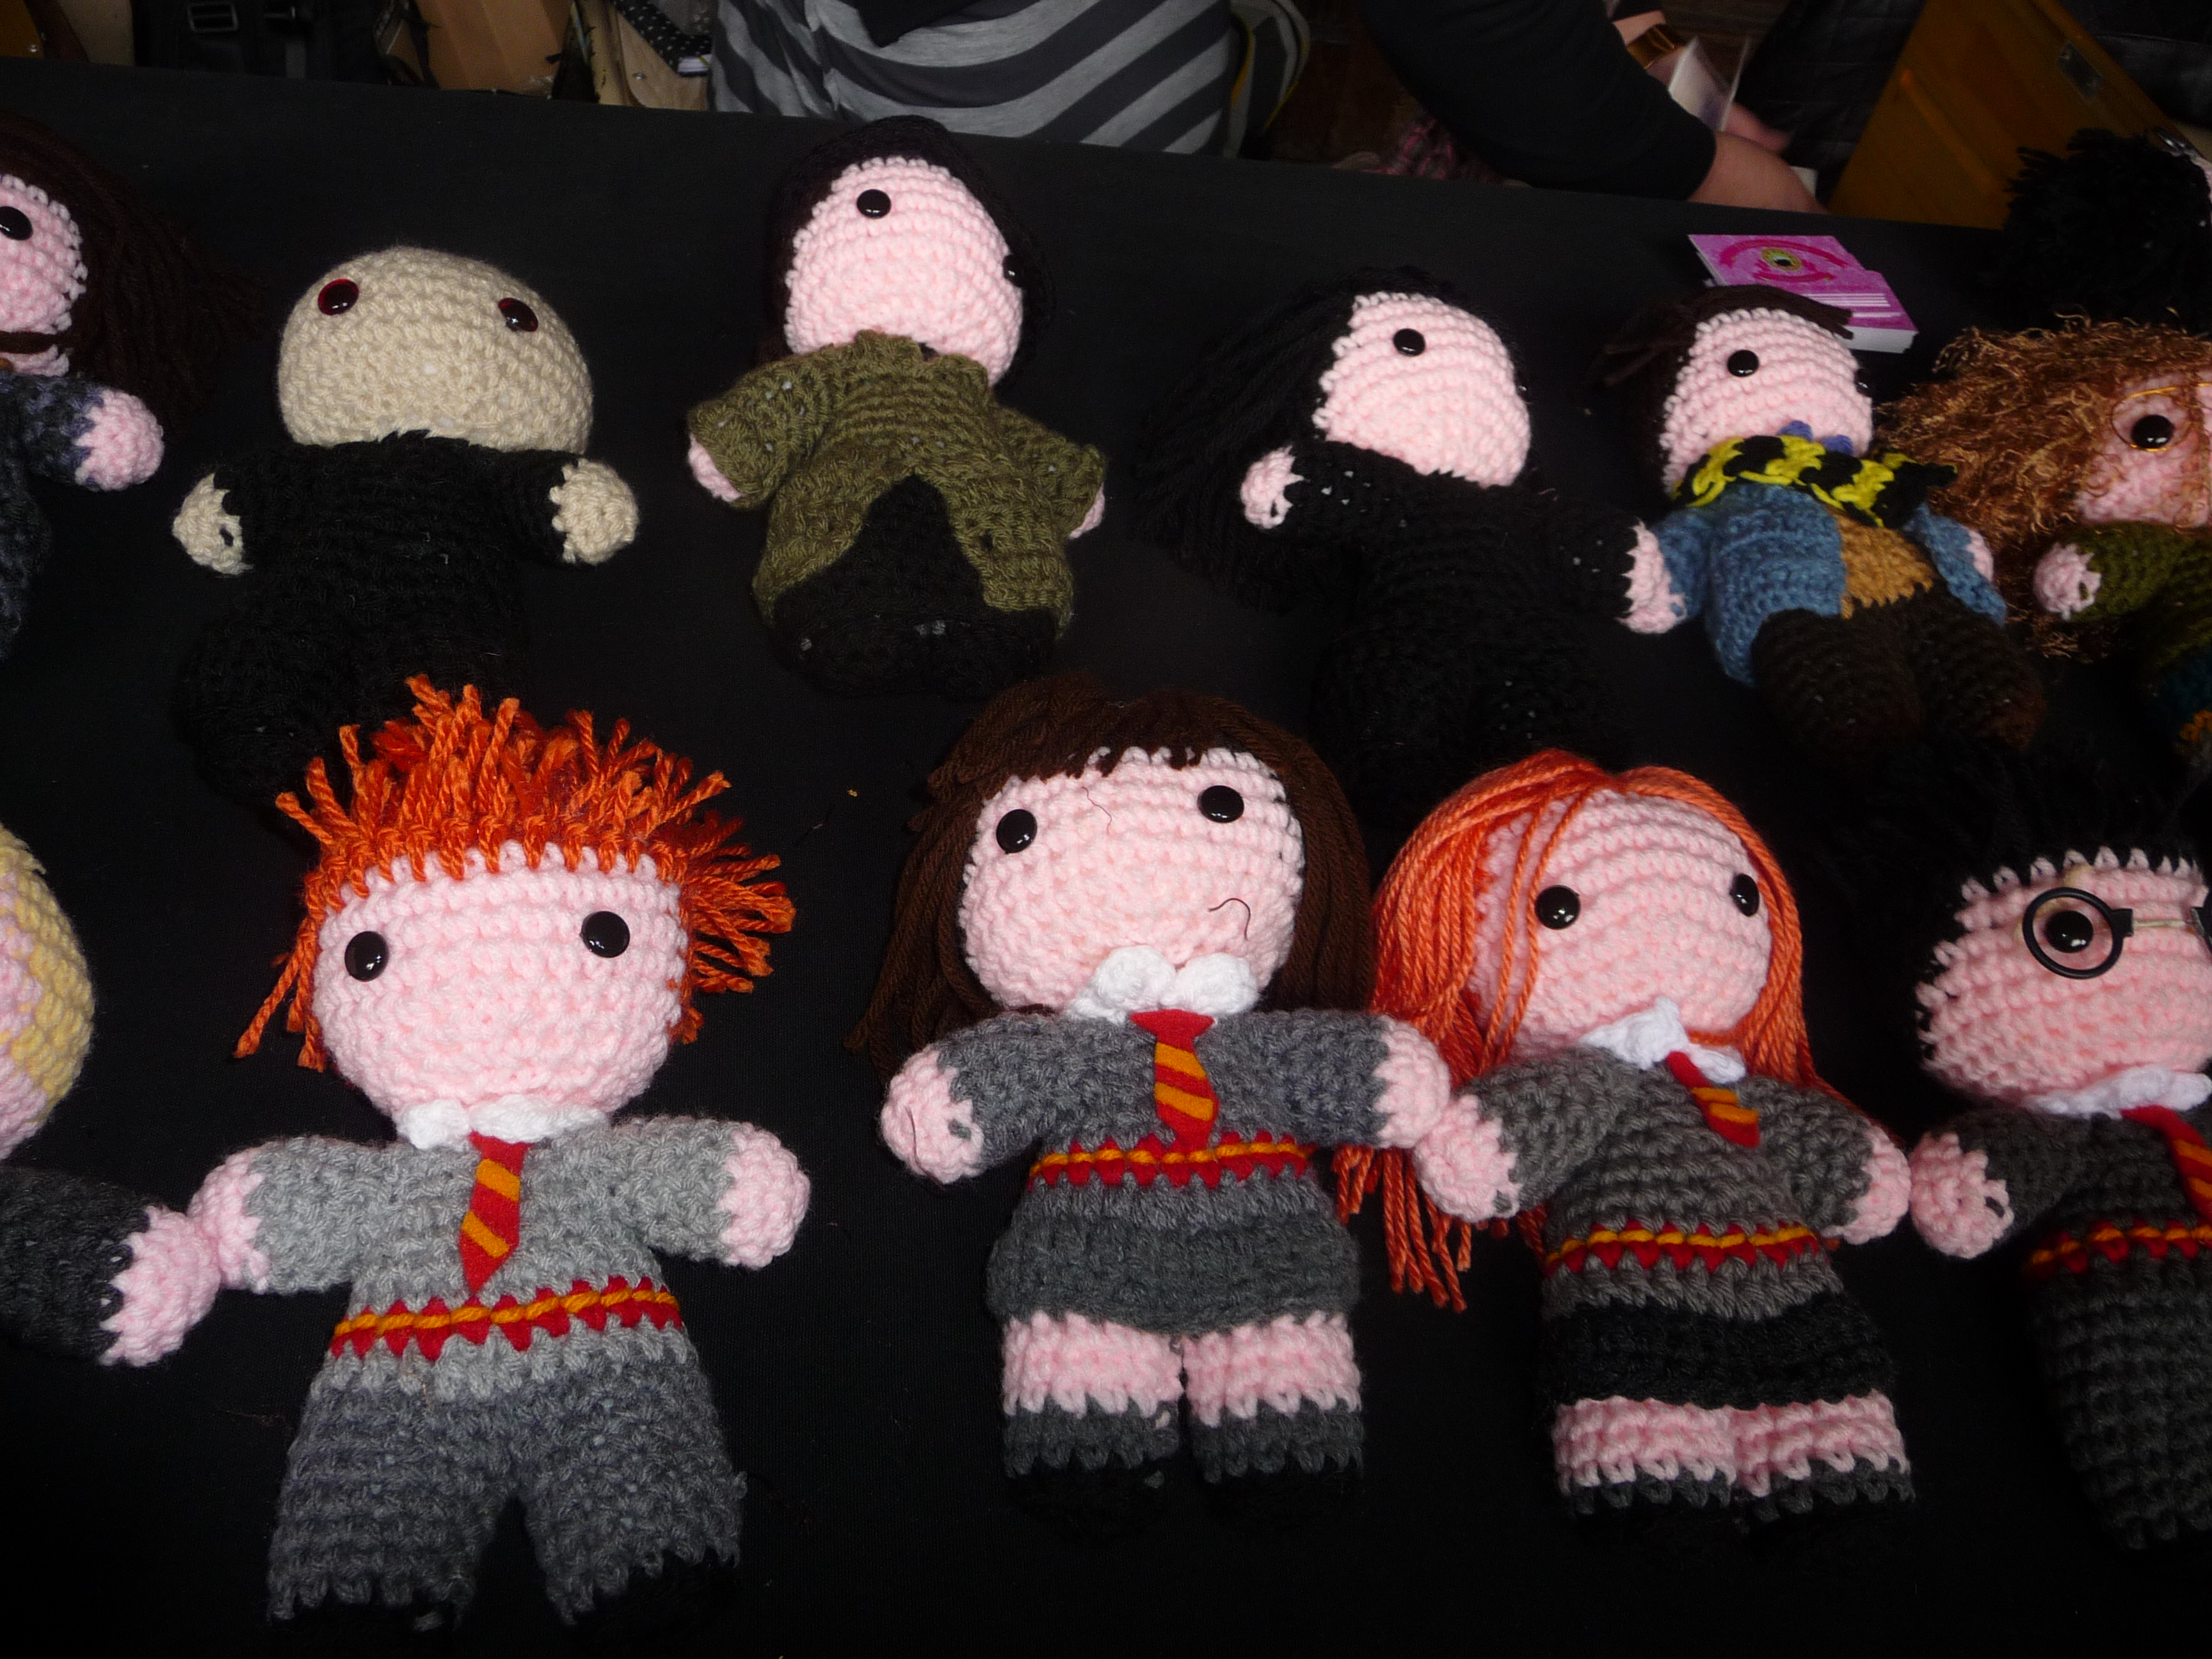 Muñecos de crochet con forma de Harry Potter © Roberta Aller & Paula Cuestas